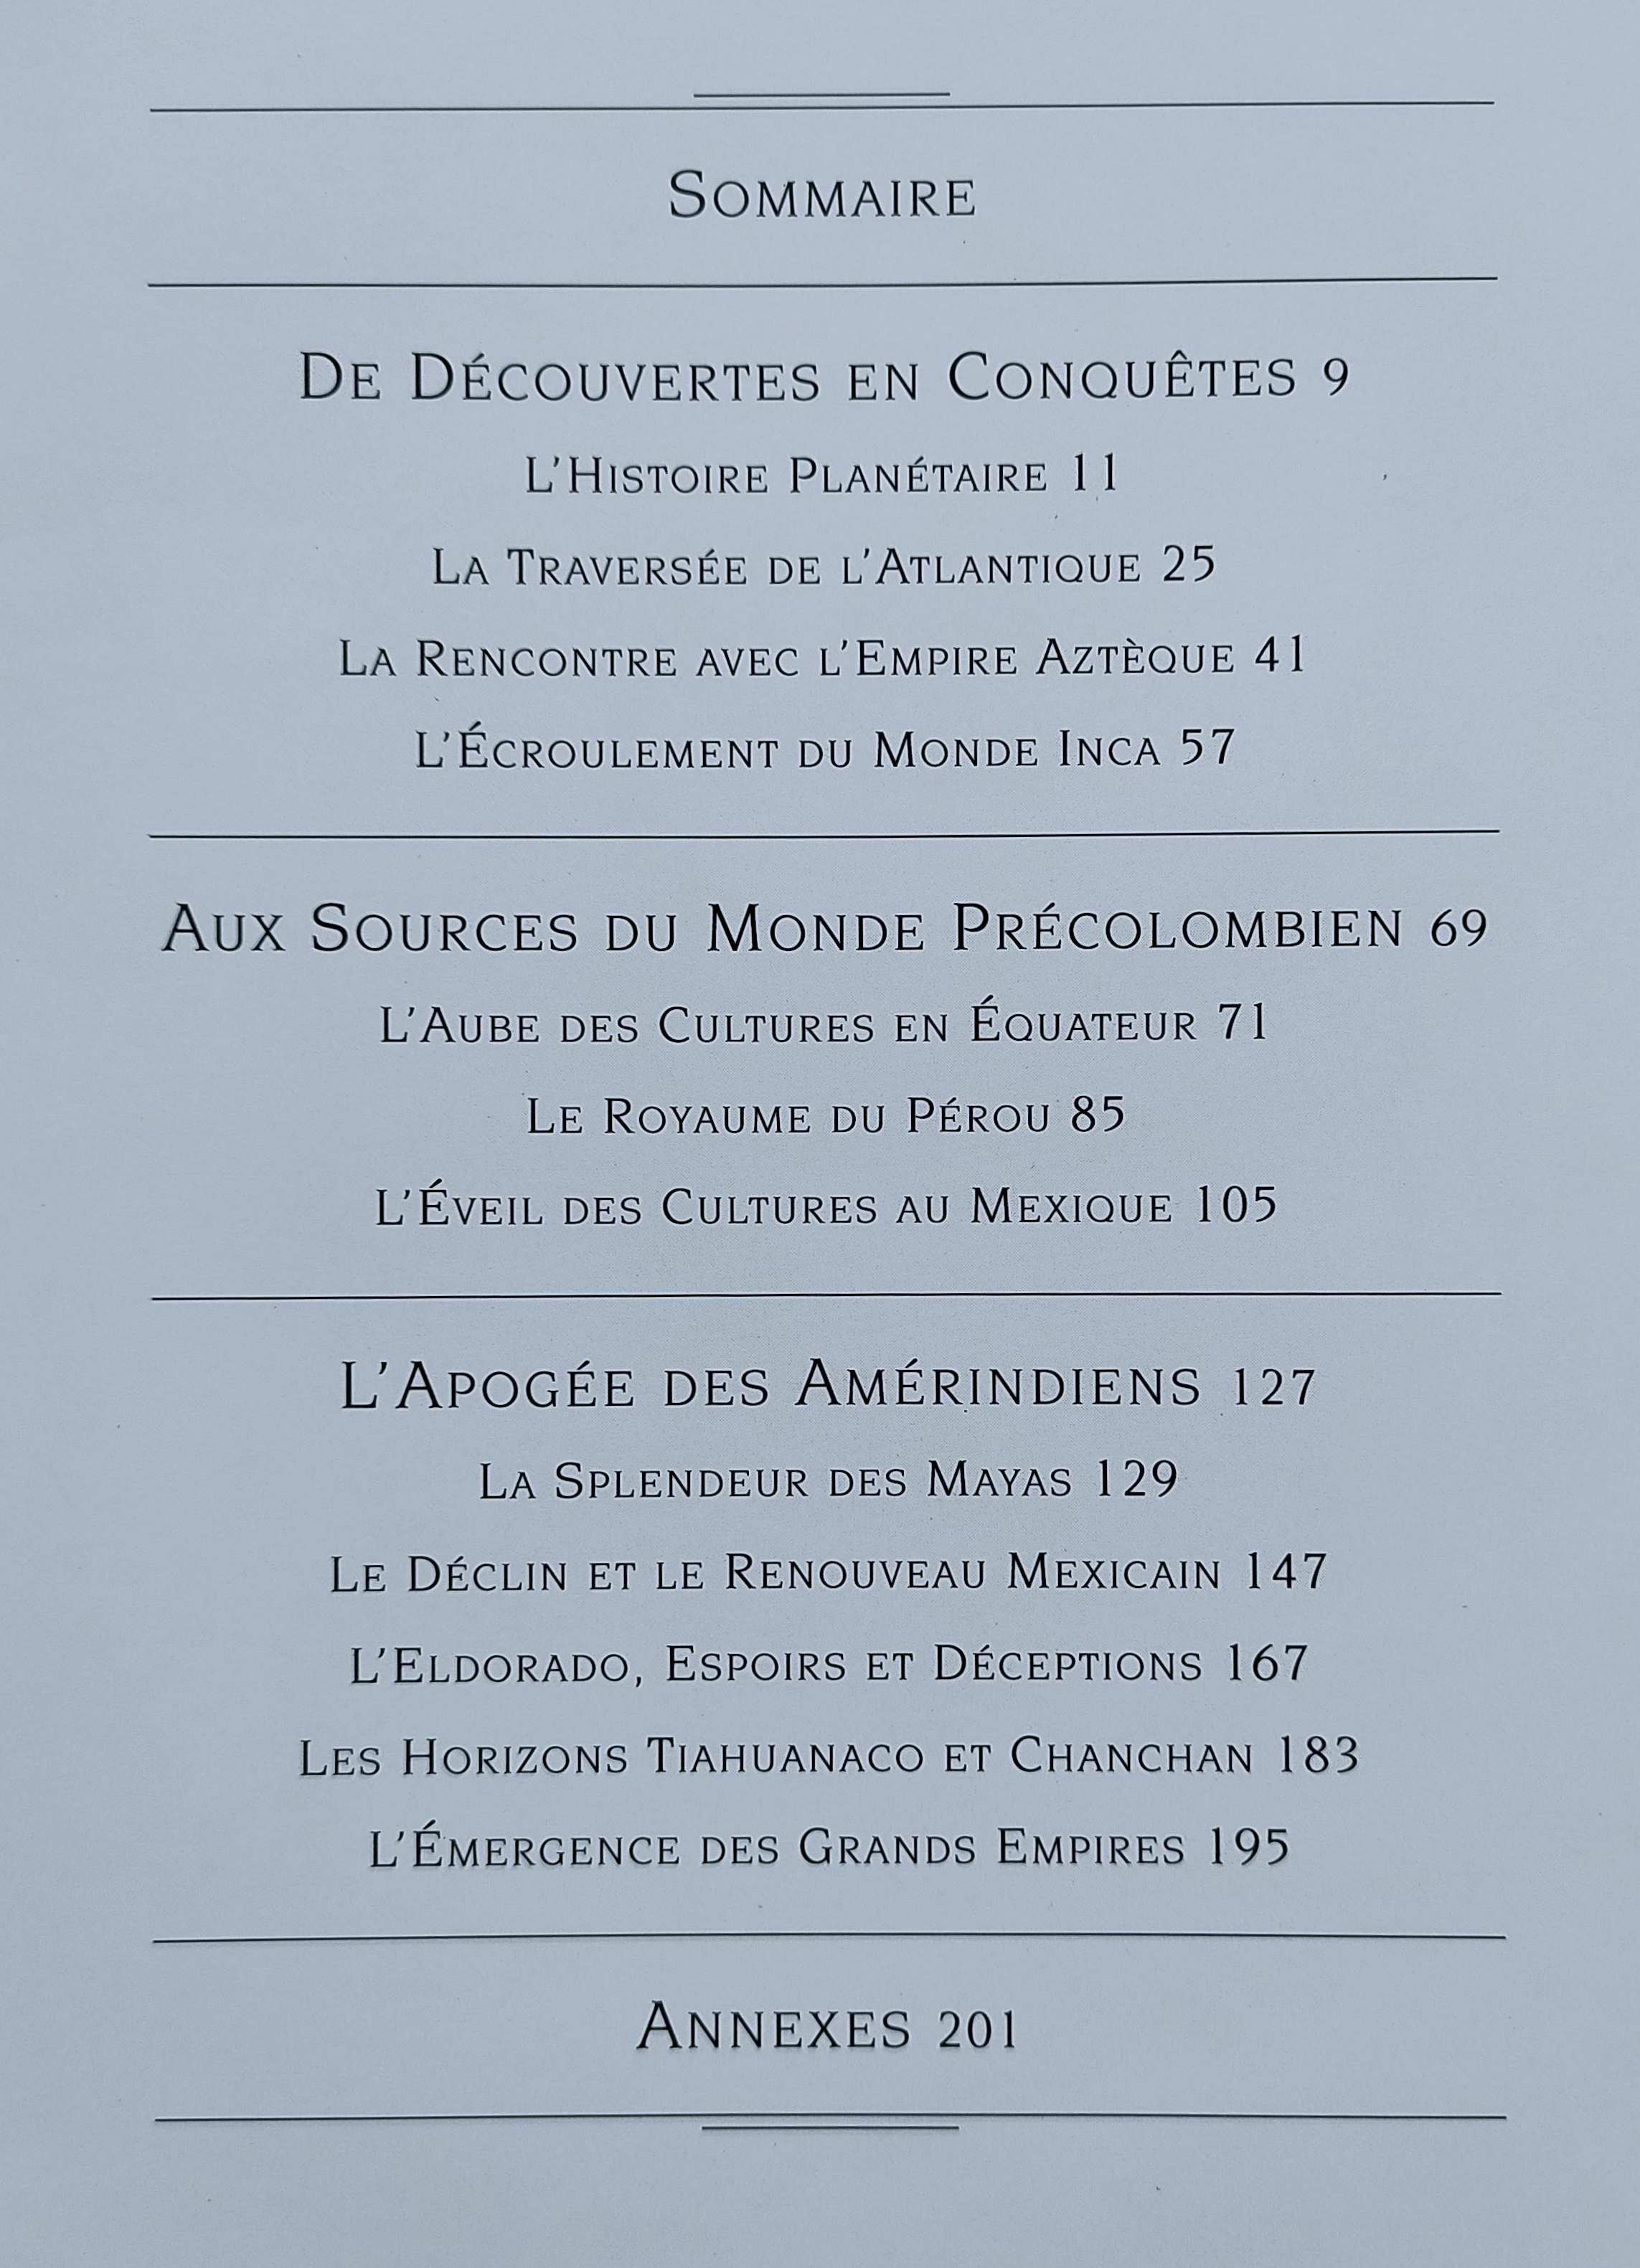 L’OR ET LA CENDRE:  À LA RENCONTRE DES AMERIQUES. 1492.  